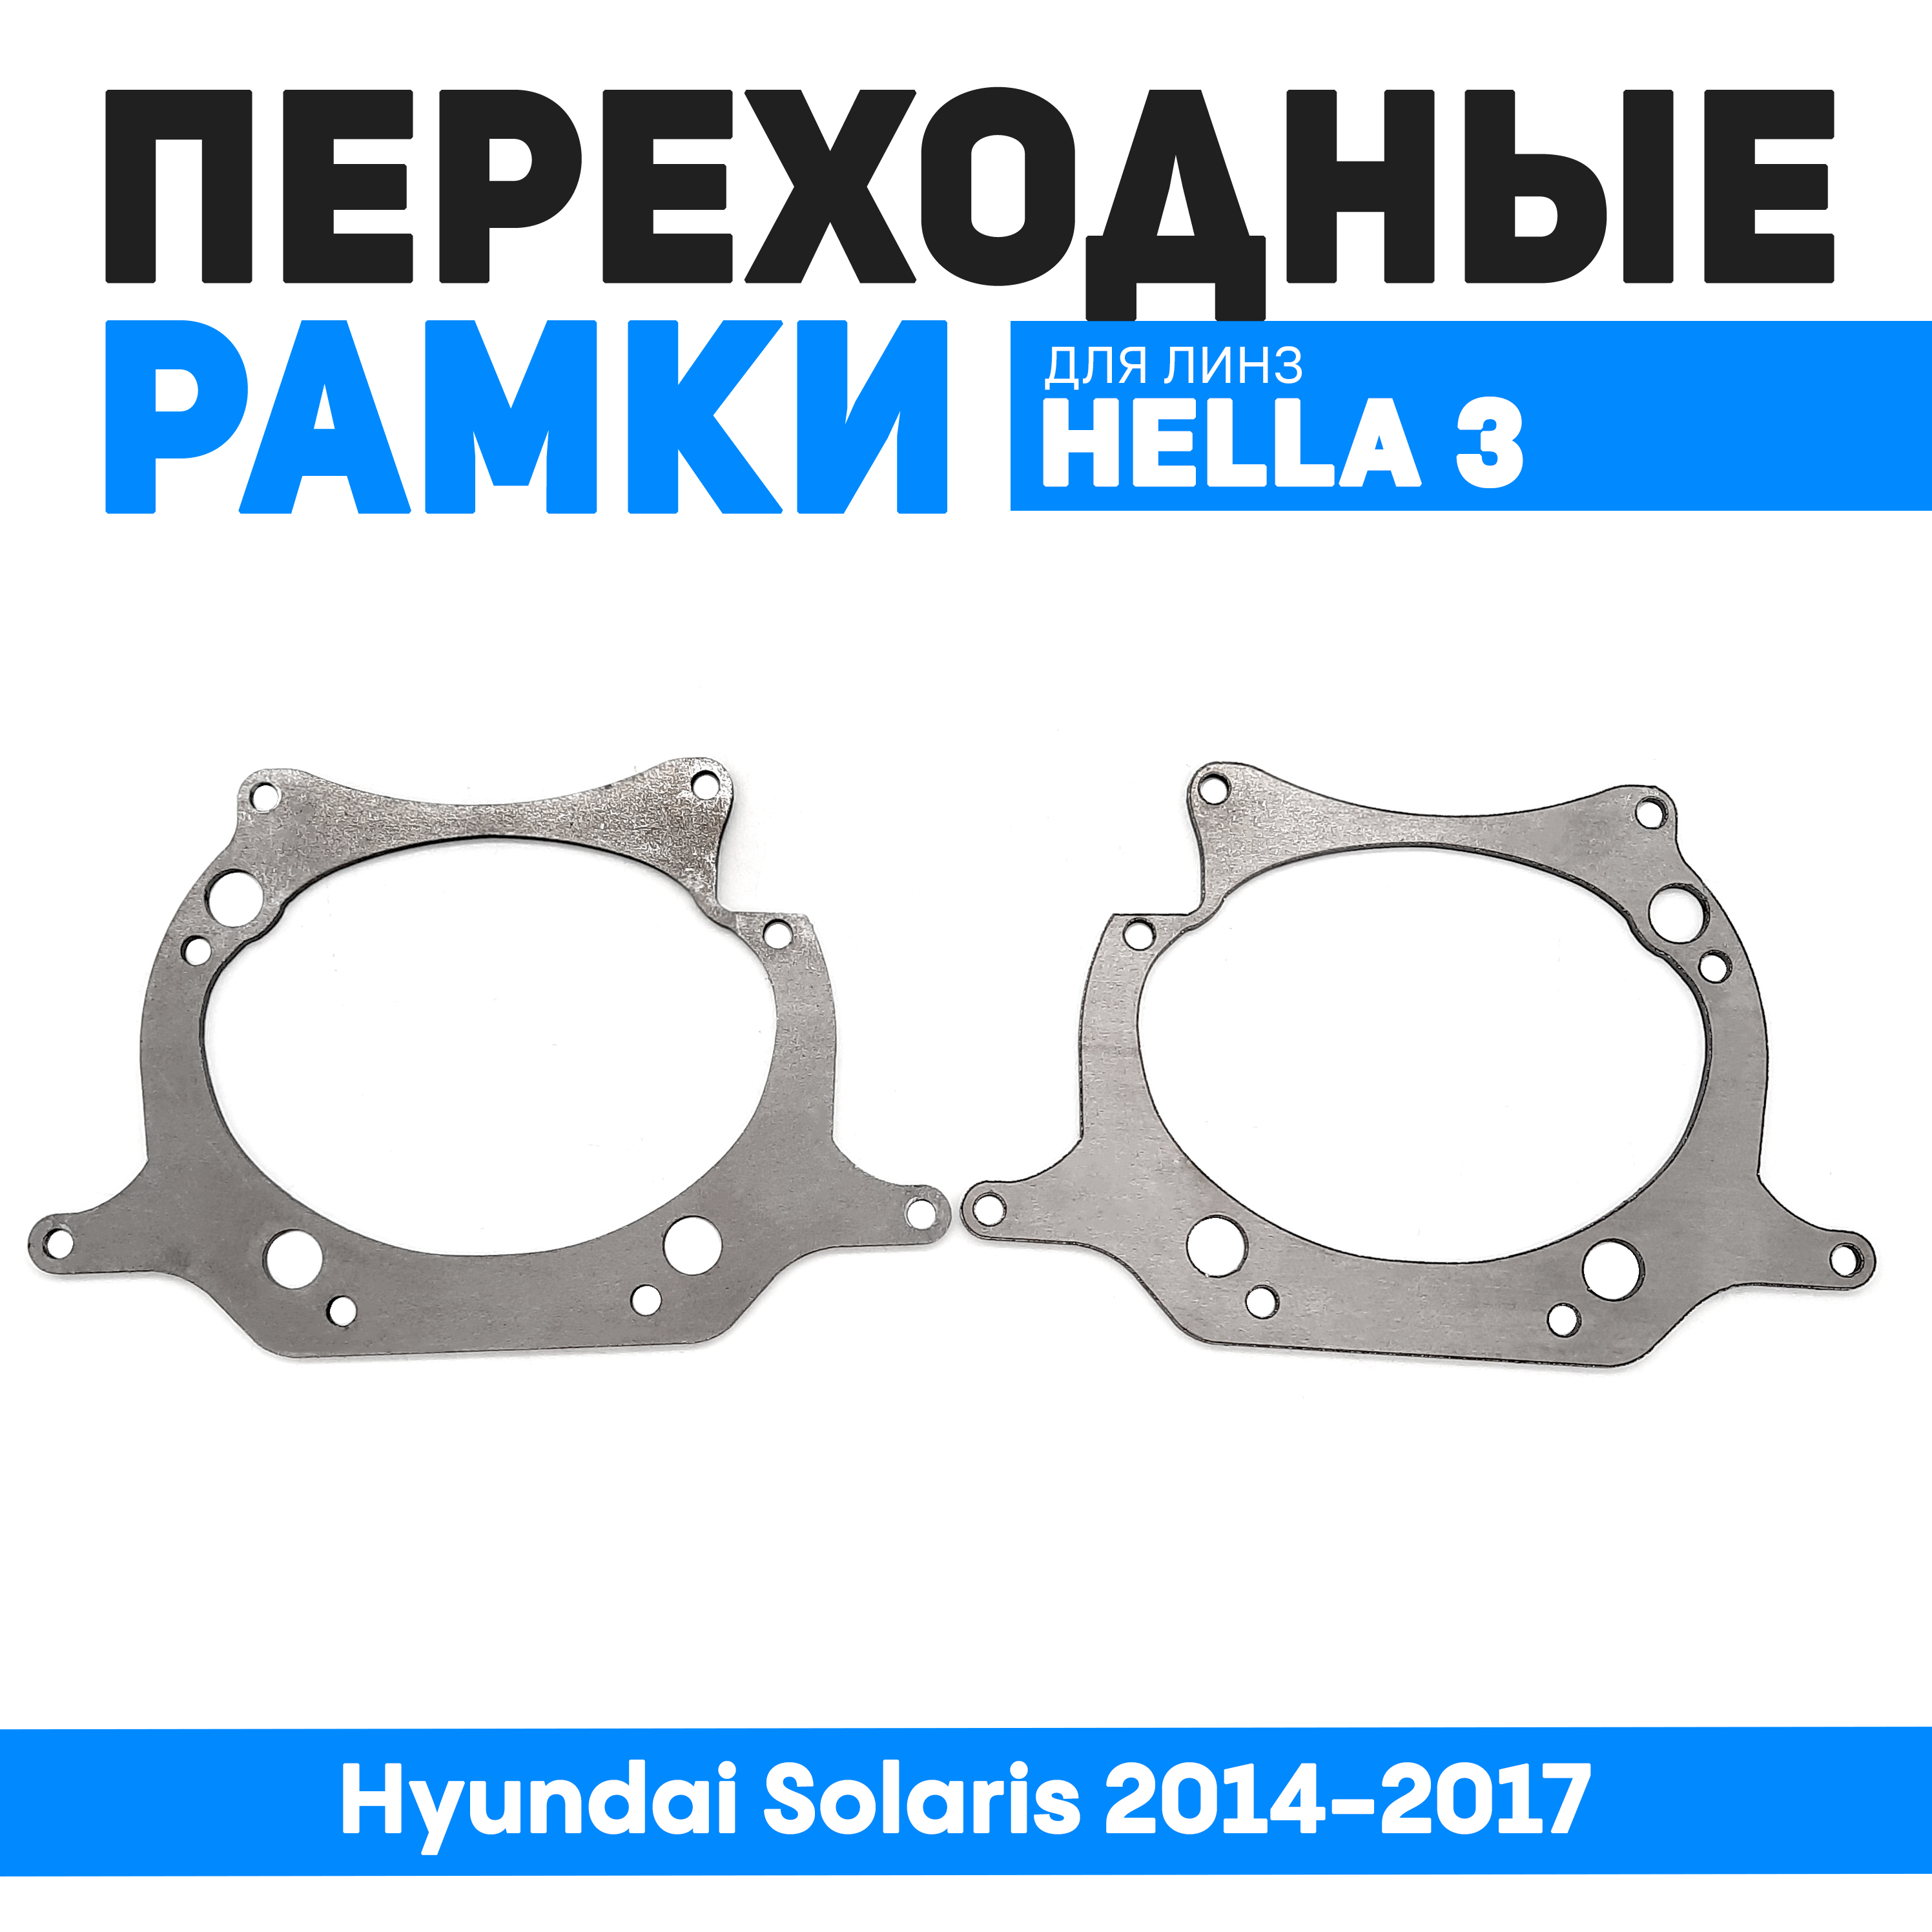 Переходные рамки Bunker-Svet для замены линз Hyundai Solaris 2014-2017